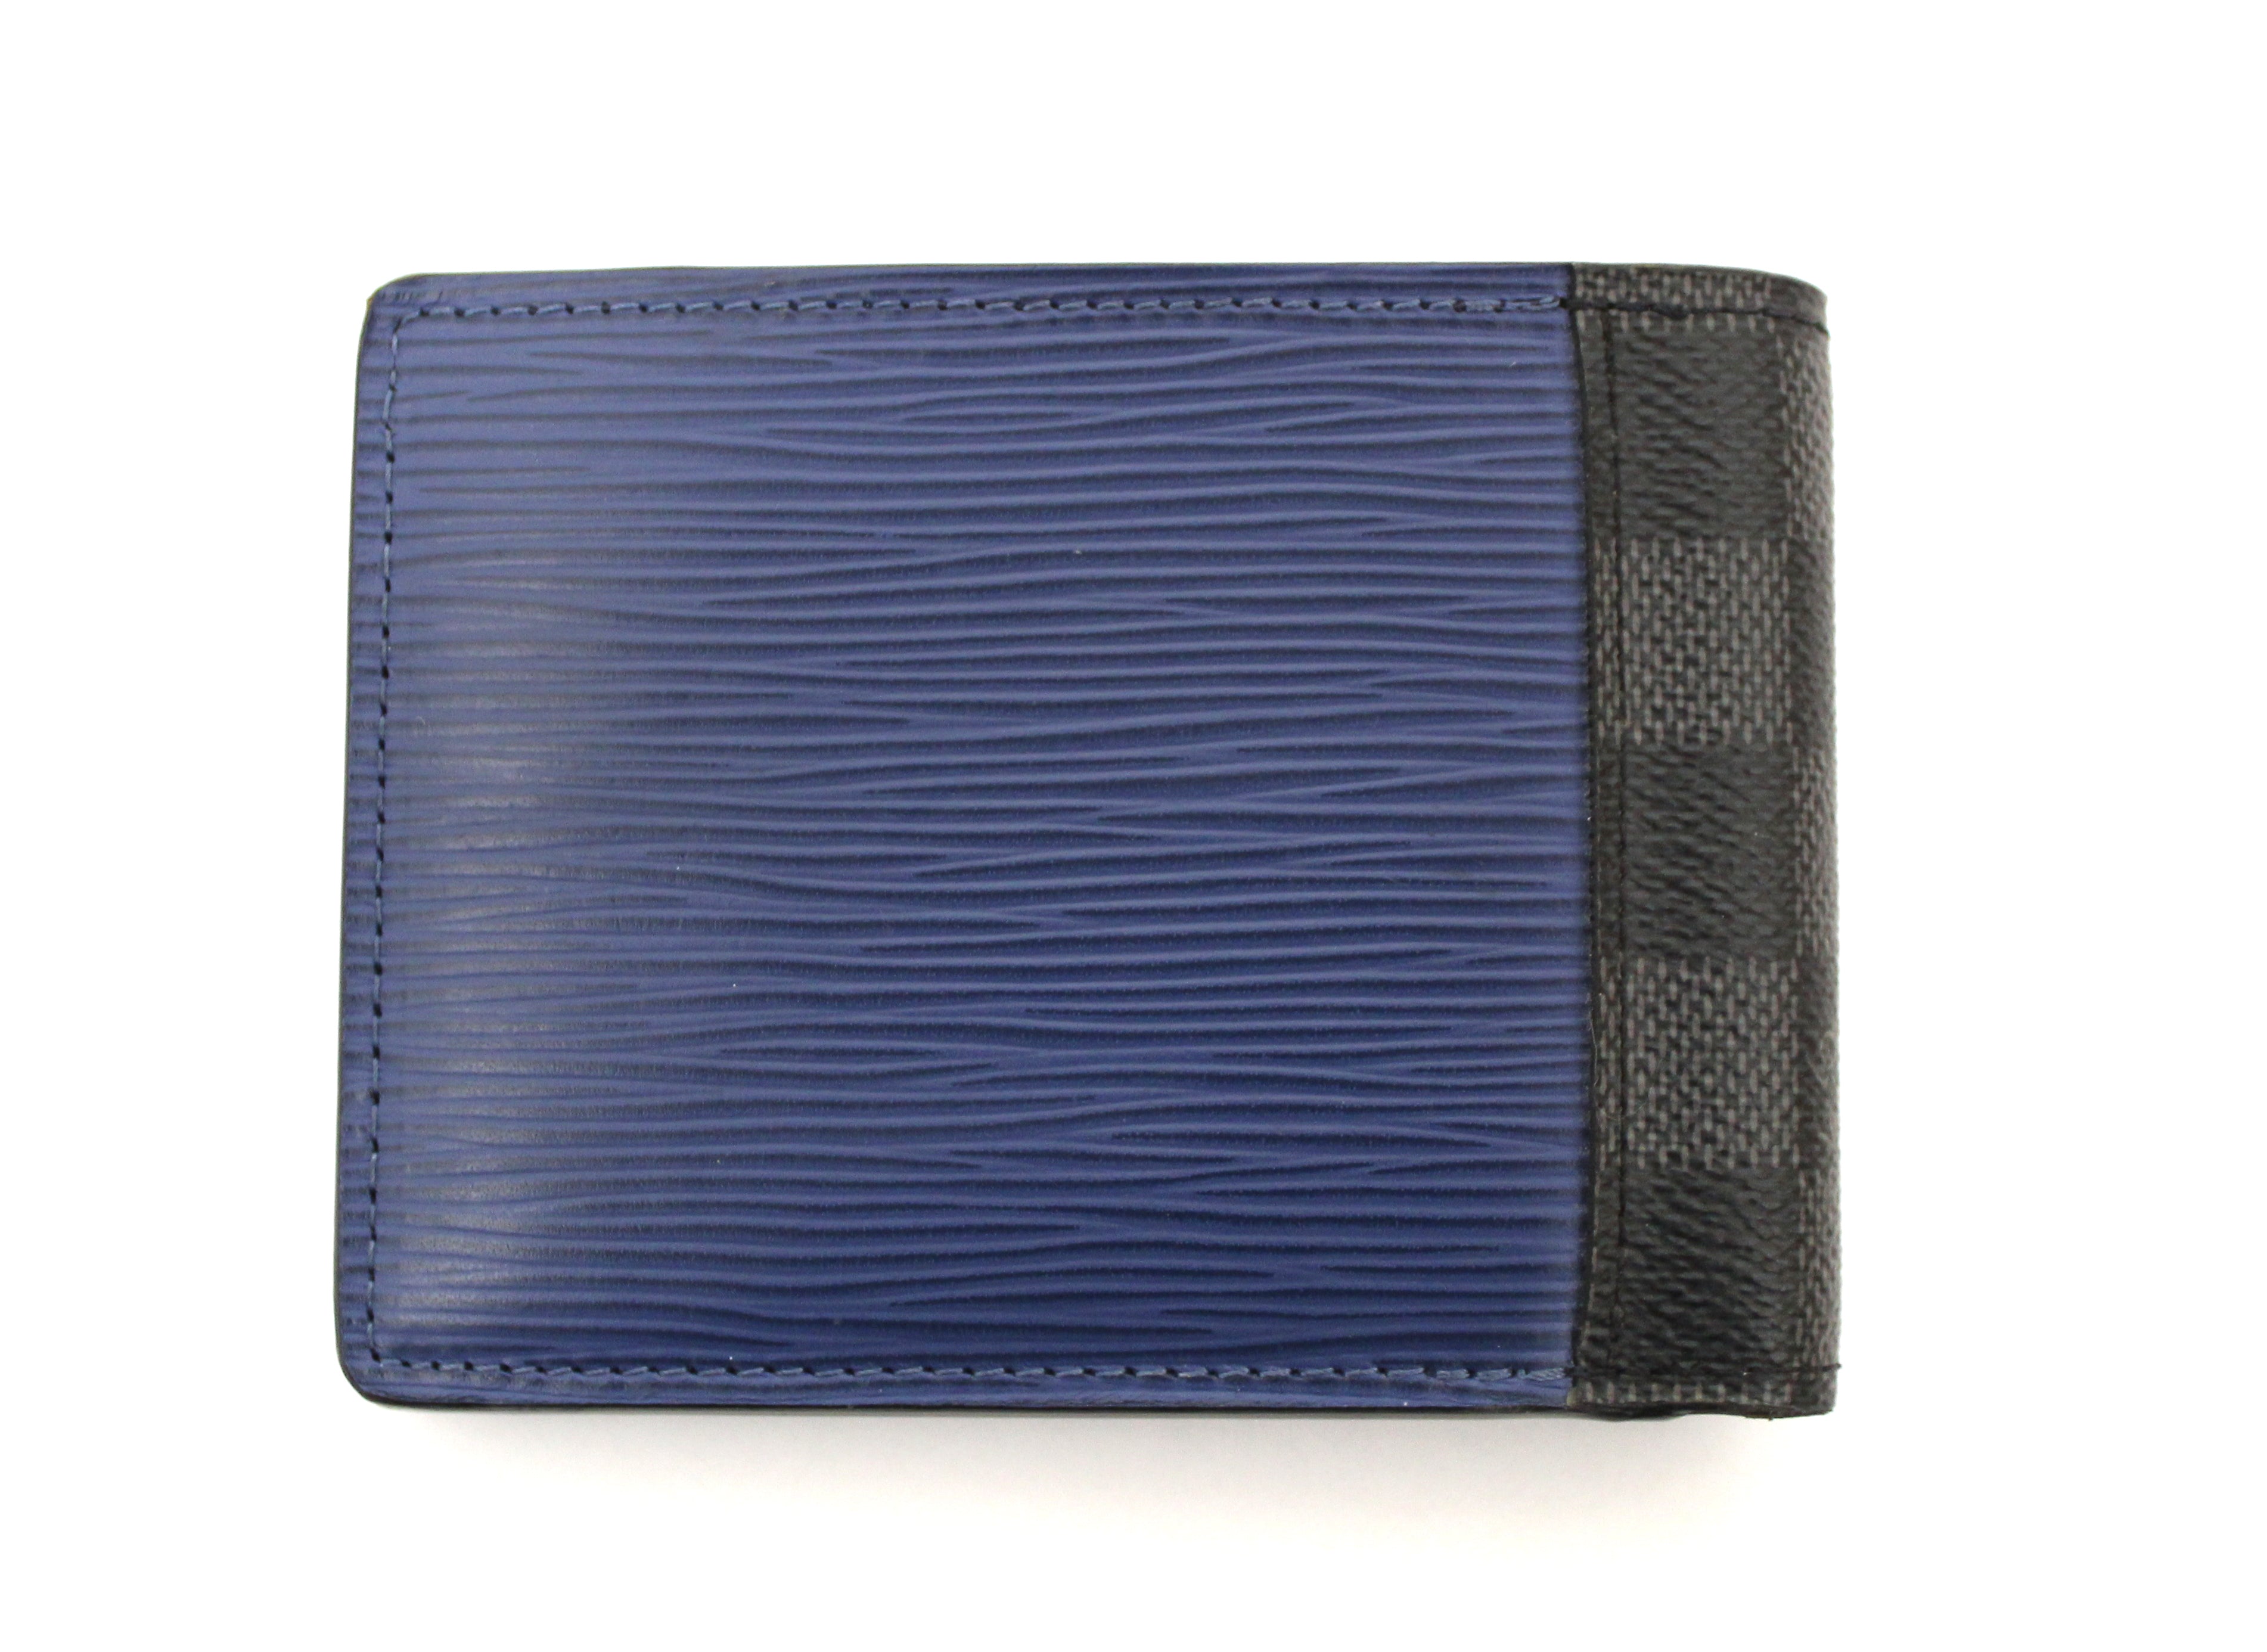 Authentic Louis Vuitton Epi Graphite Limited Edition Men's Multiple Wallet